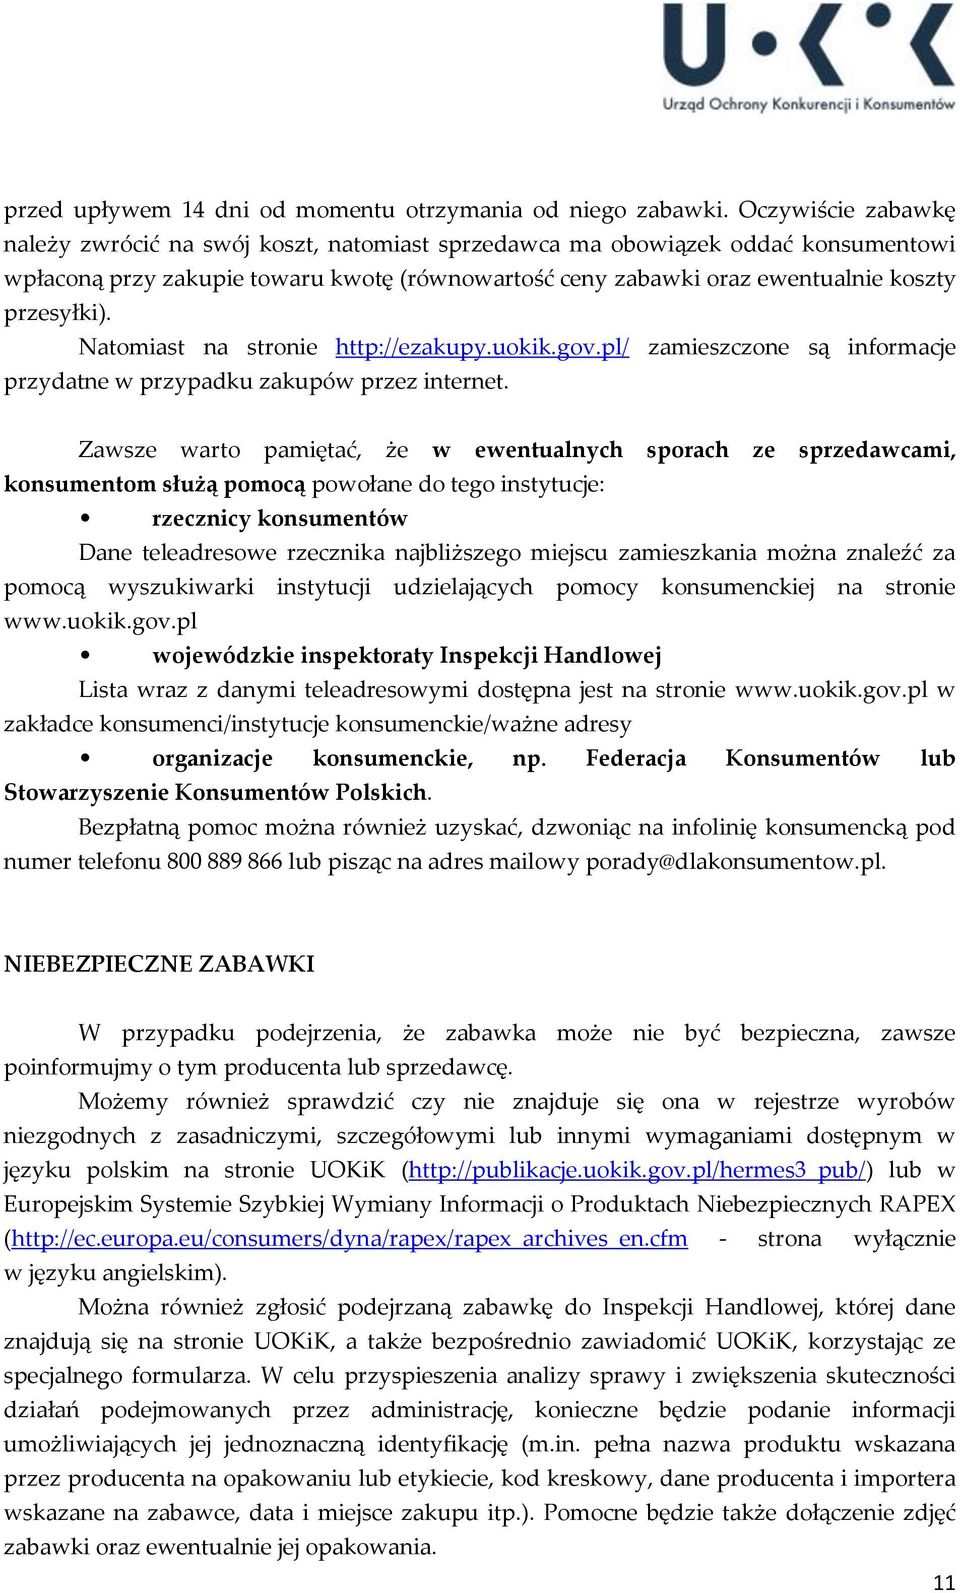 Natomiast na stronie http://ezakupy.uokik.gov.pl/ zamieszczone są informacje przydatne w przypadku zakupów przez internet.